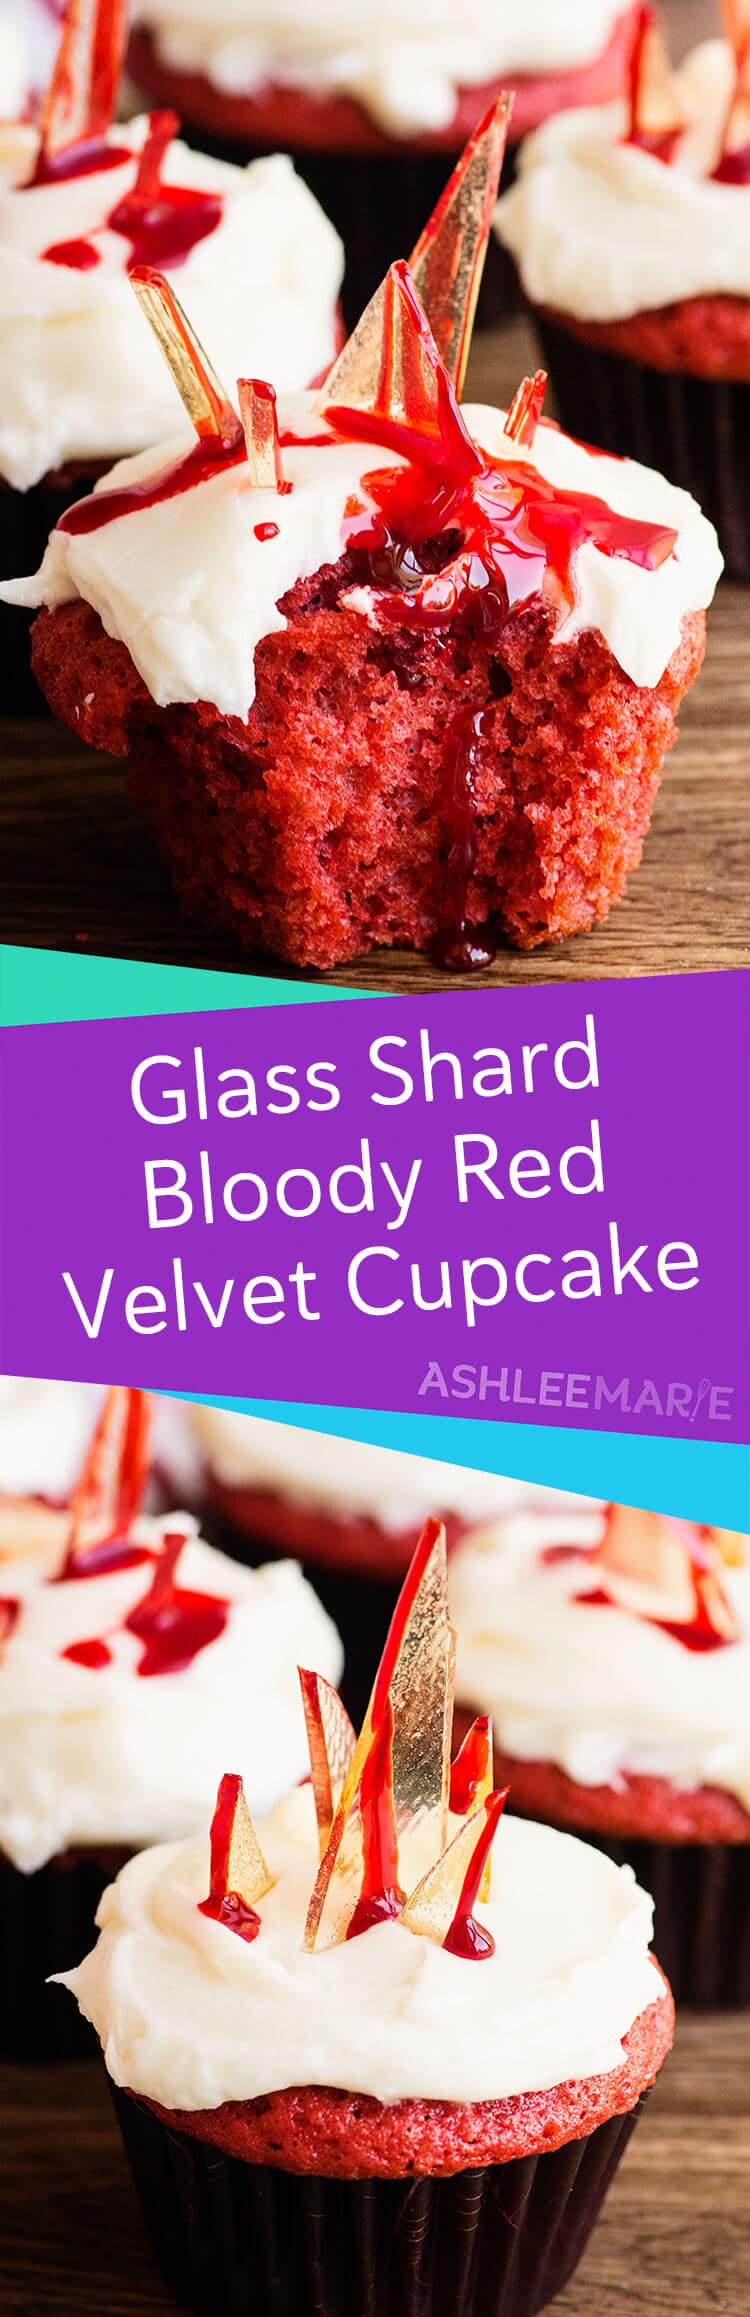 glass shard bloody red velvet cupcakes